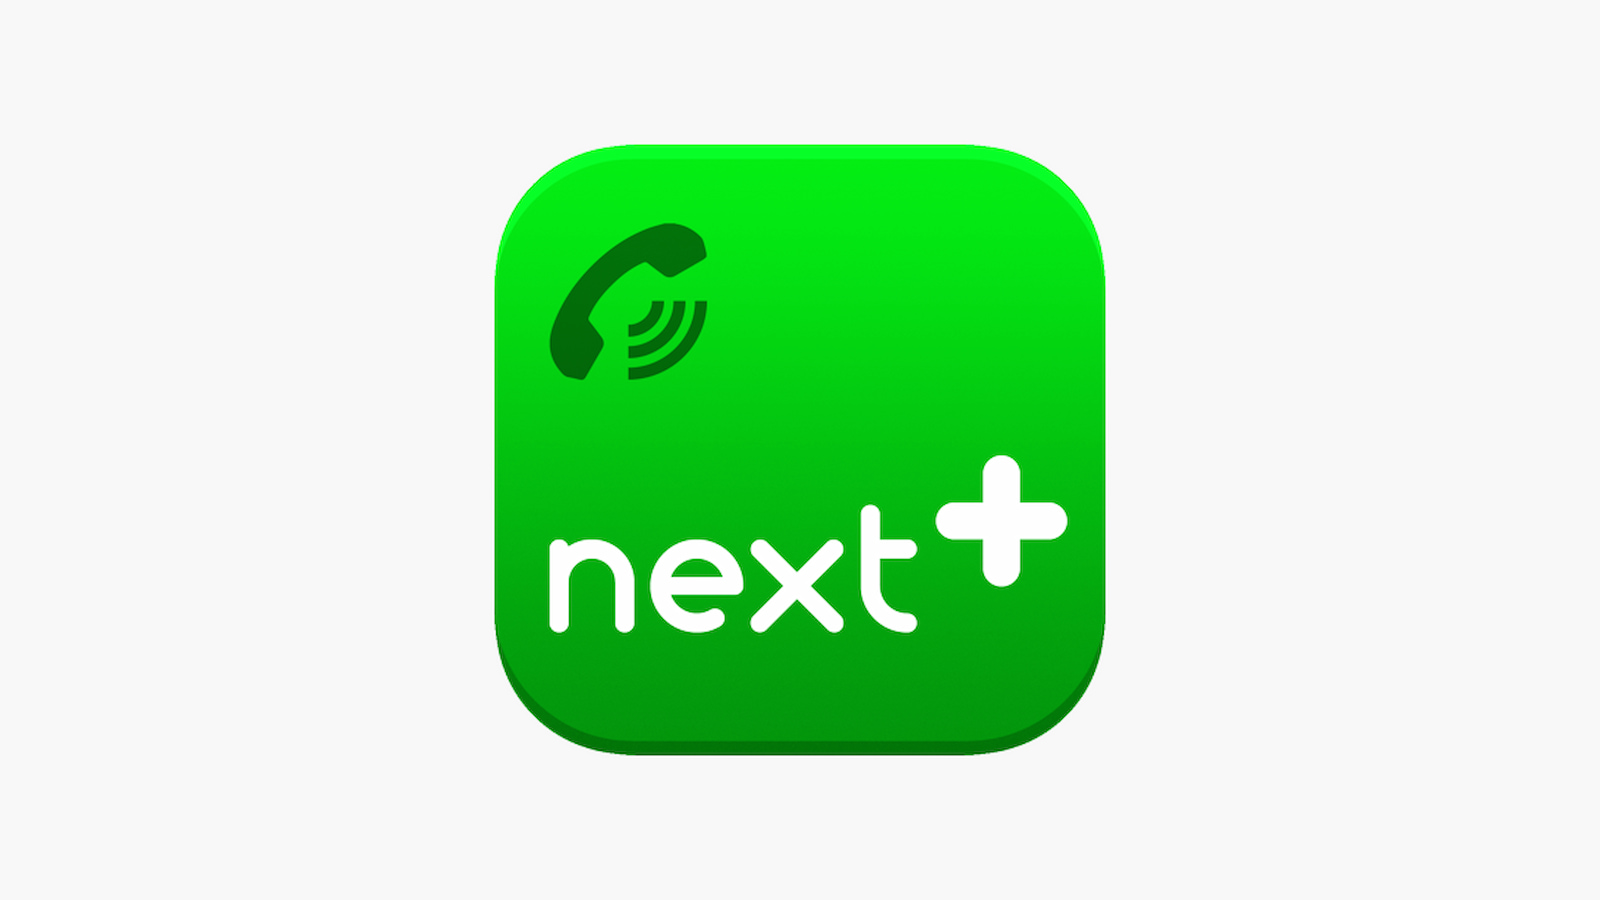 آموزش ساخت شماره مجازی با NextPlus